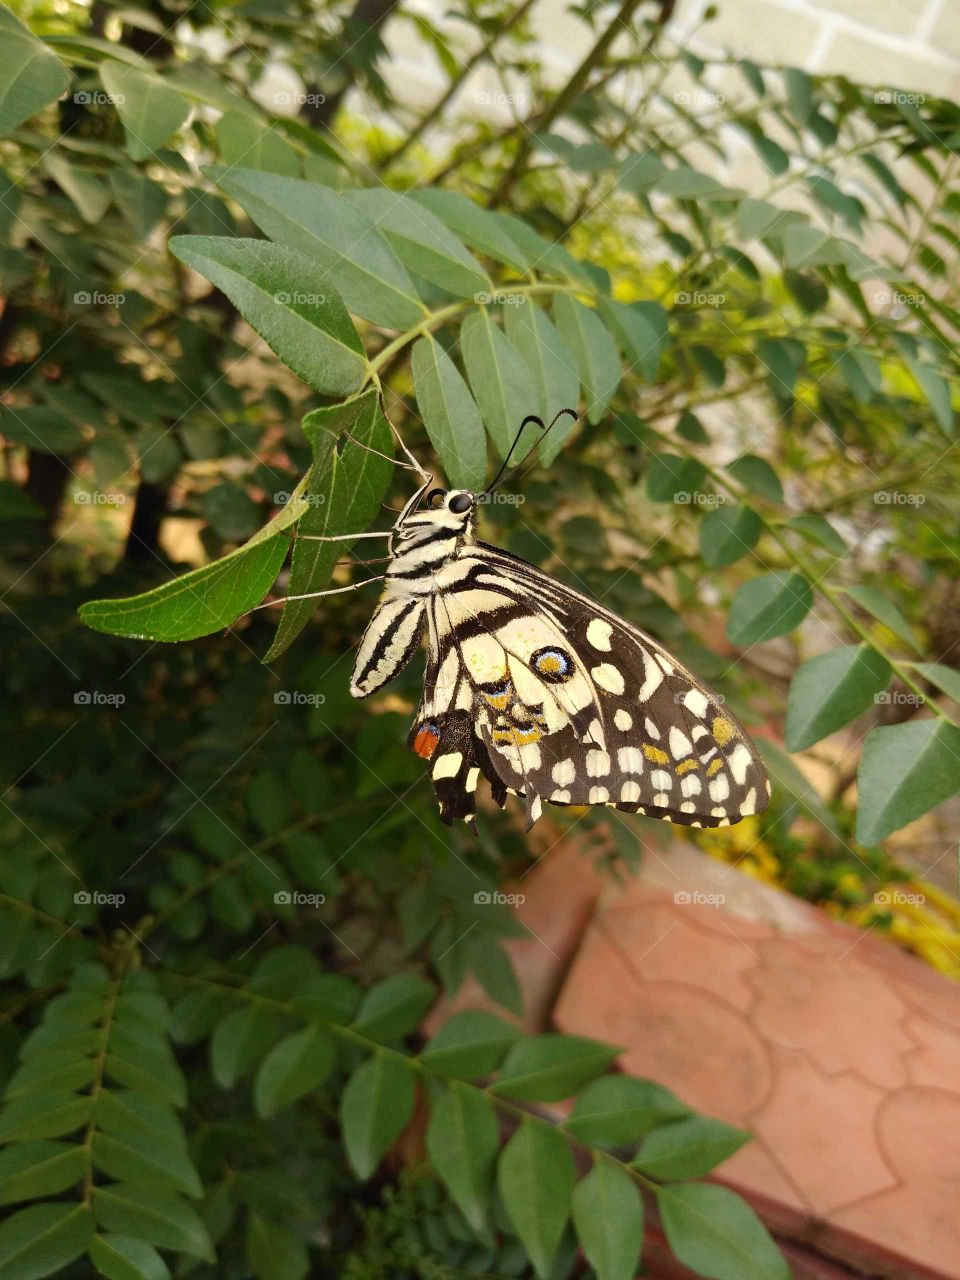 a butterfly in my garden